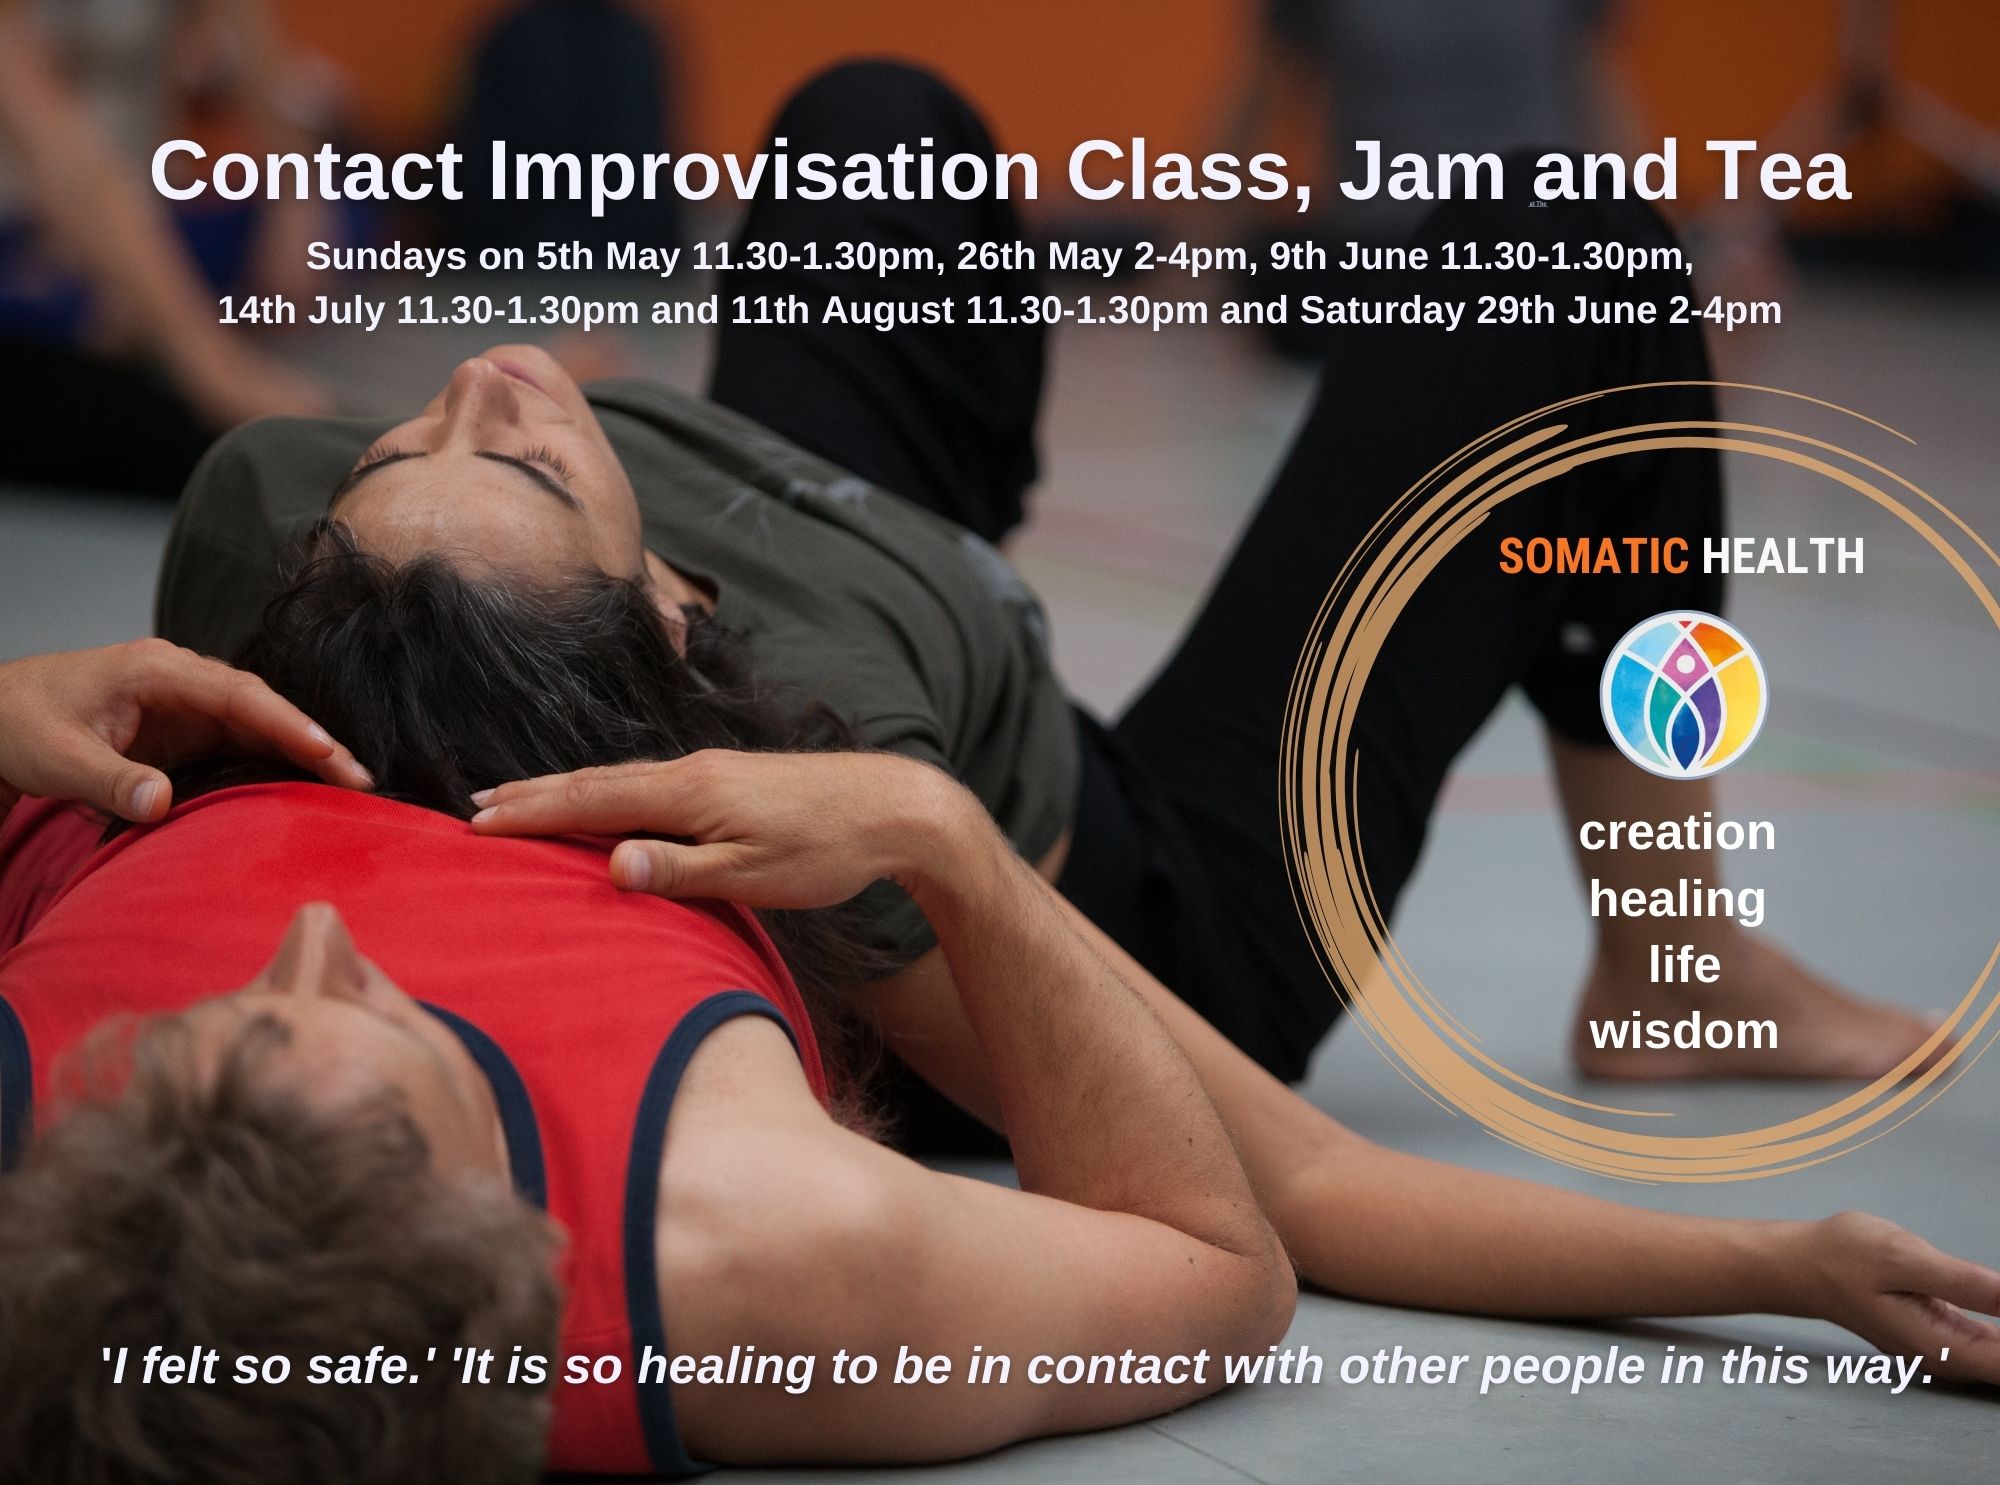 Contact Improvisation Dance Class, Jam and Tea